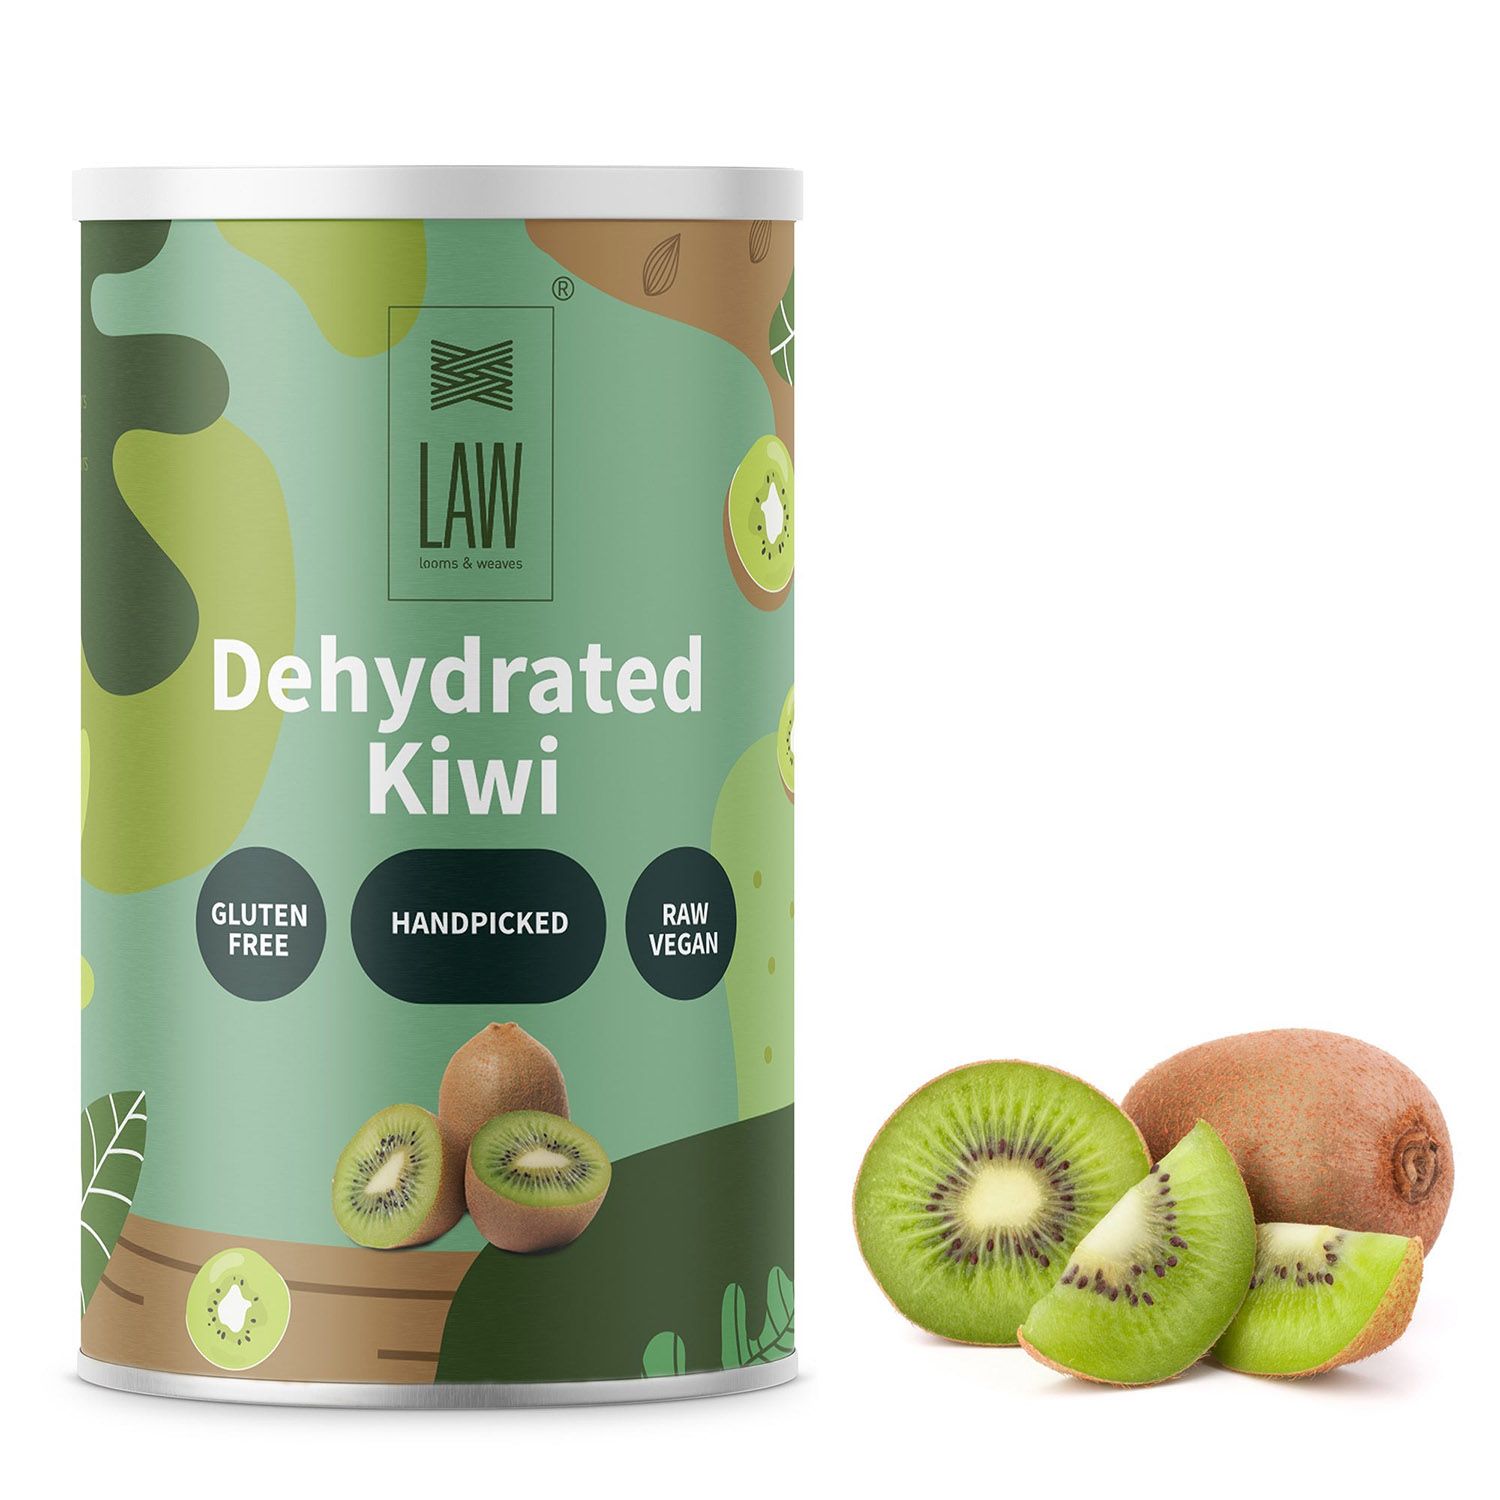 Dehydrated Kiwi